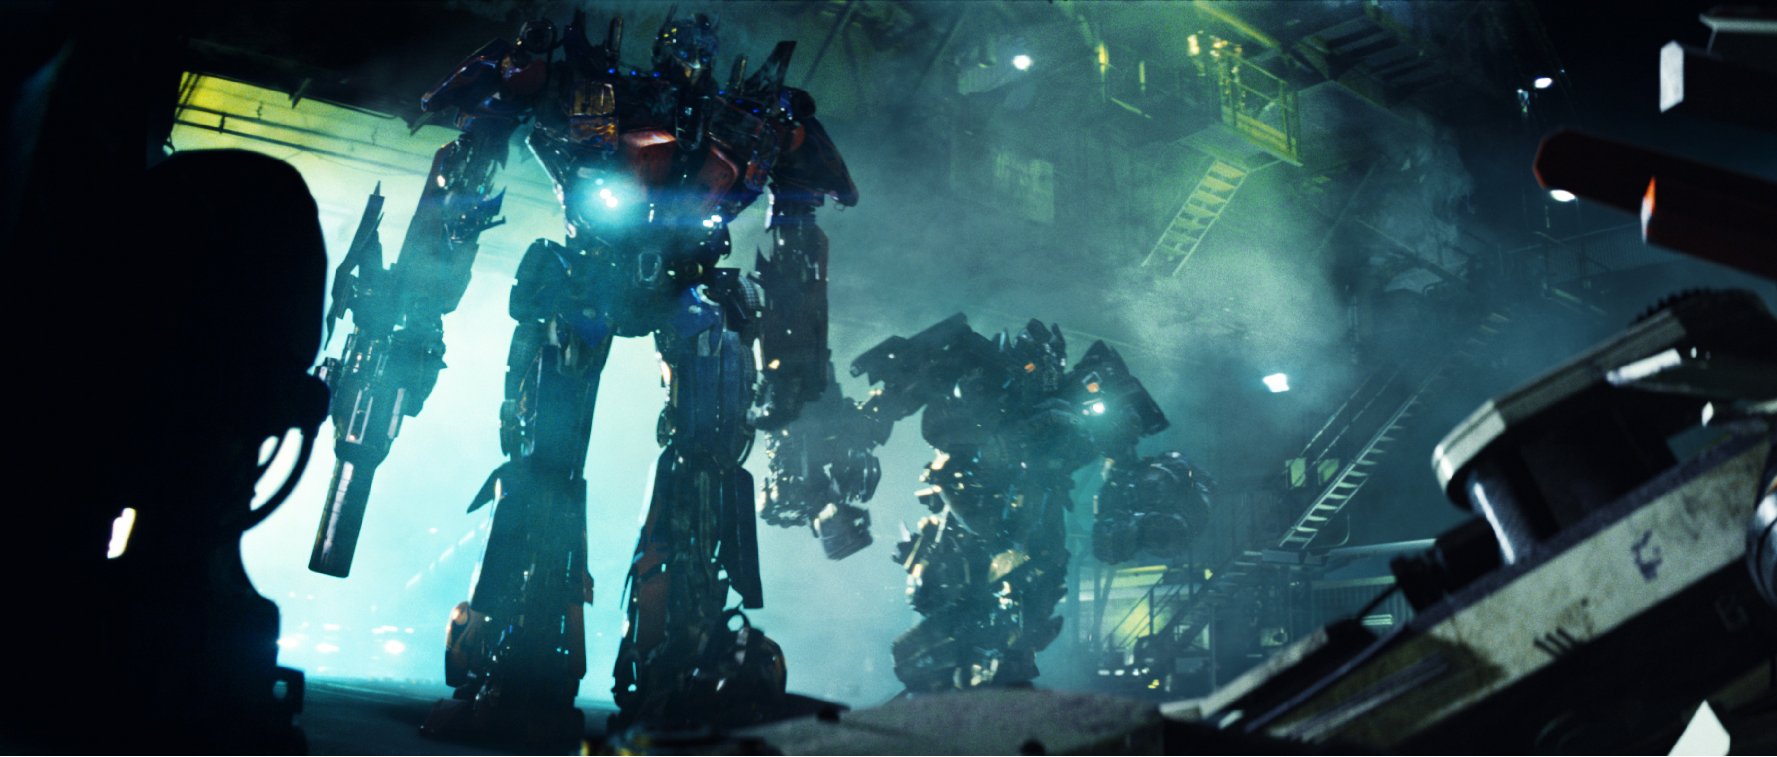 transformers revenge of the fallen full movie online free